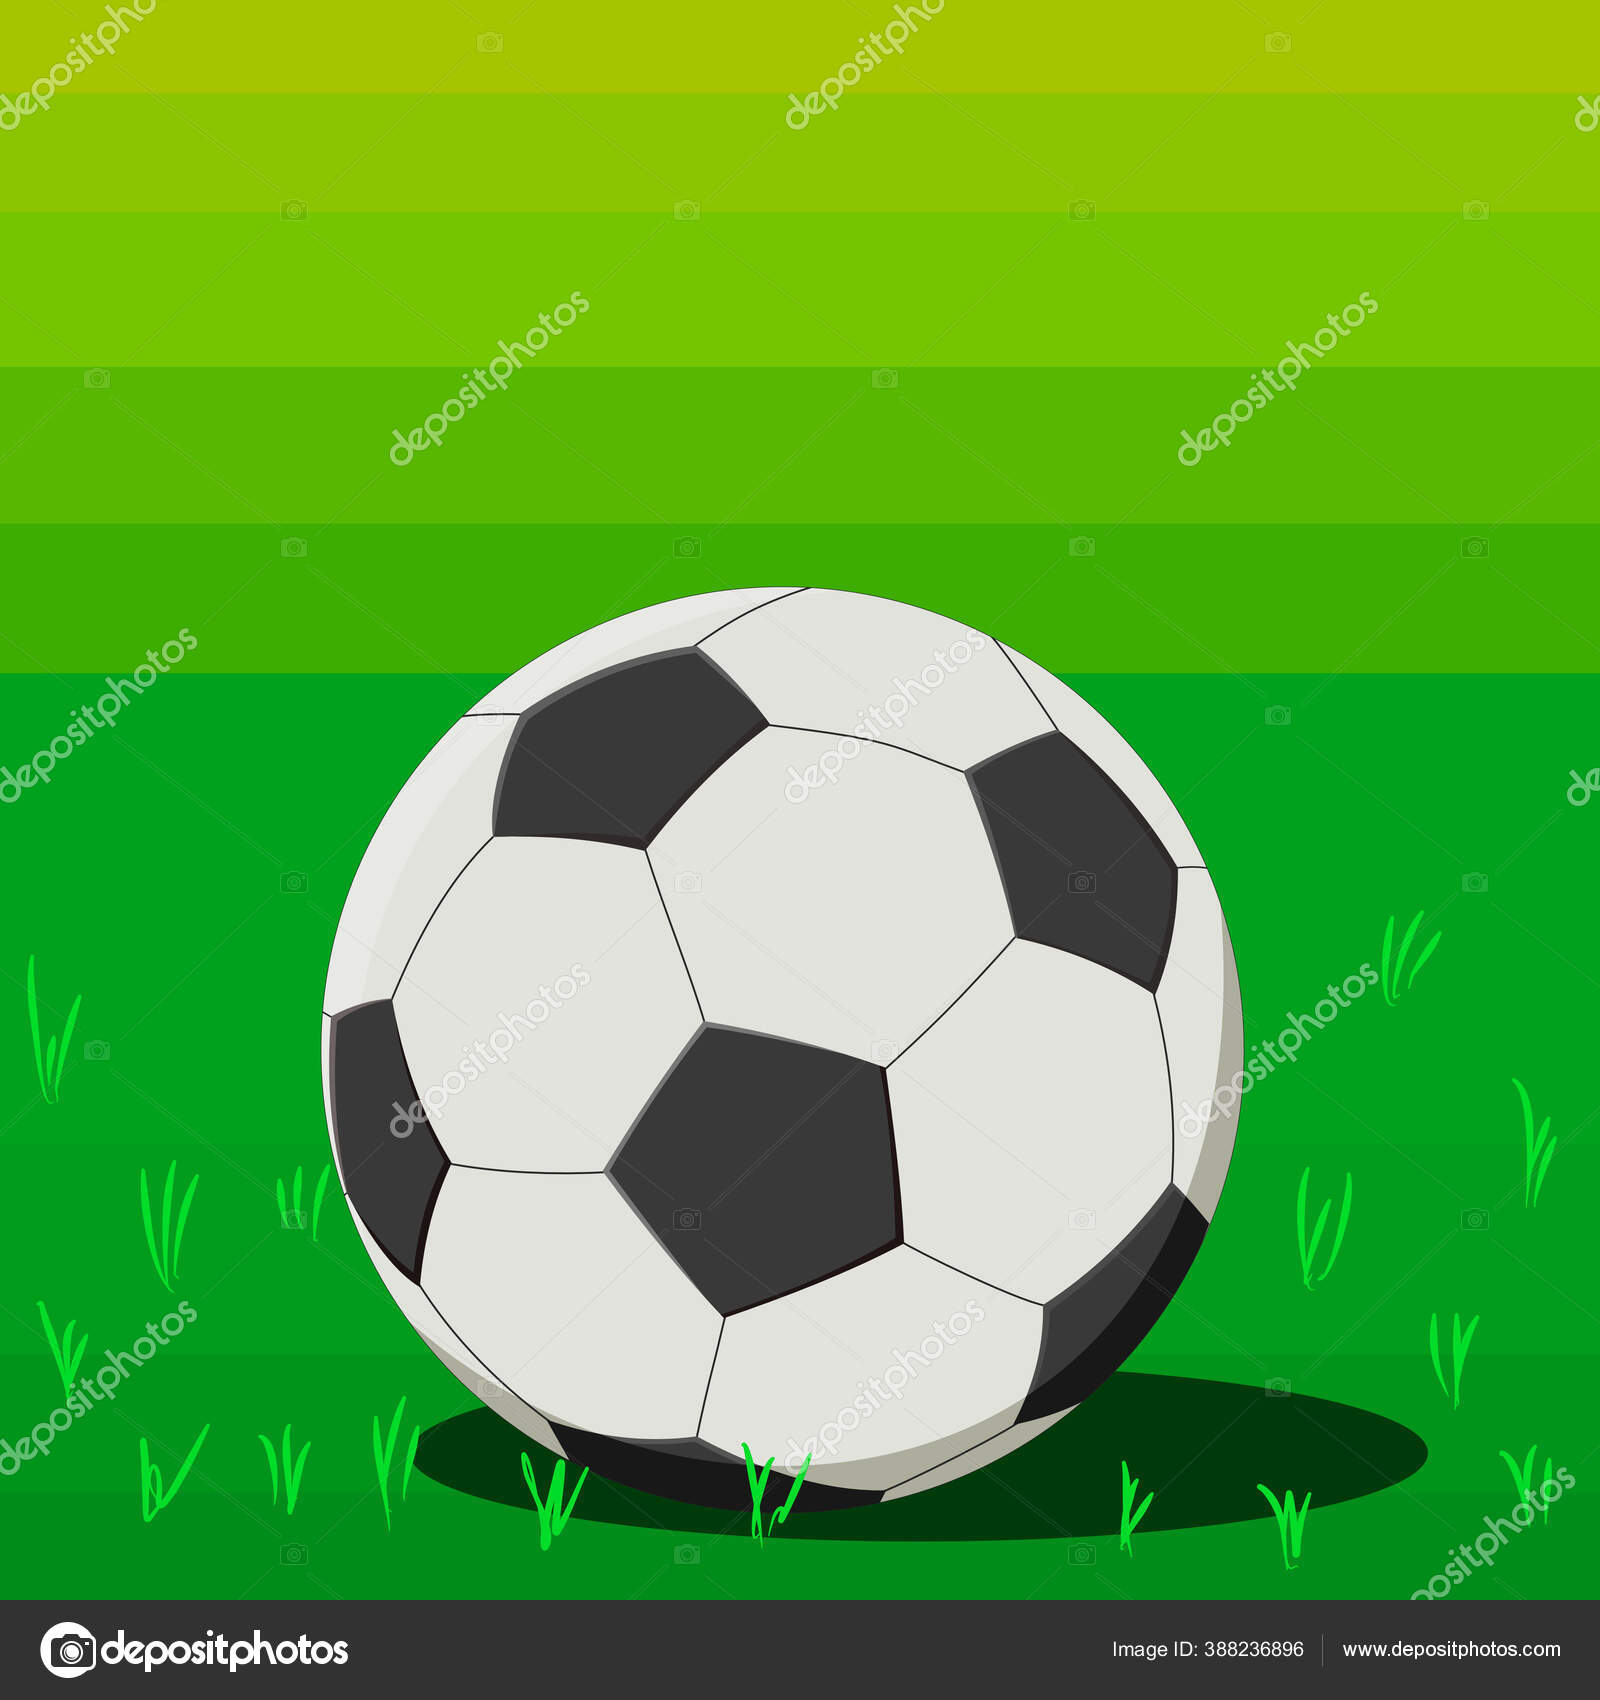 緑の芝生の背景にサッカーボール ベクトルイラスト ストックベクター C Junce11 366